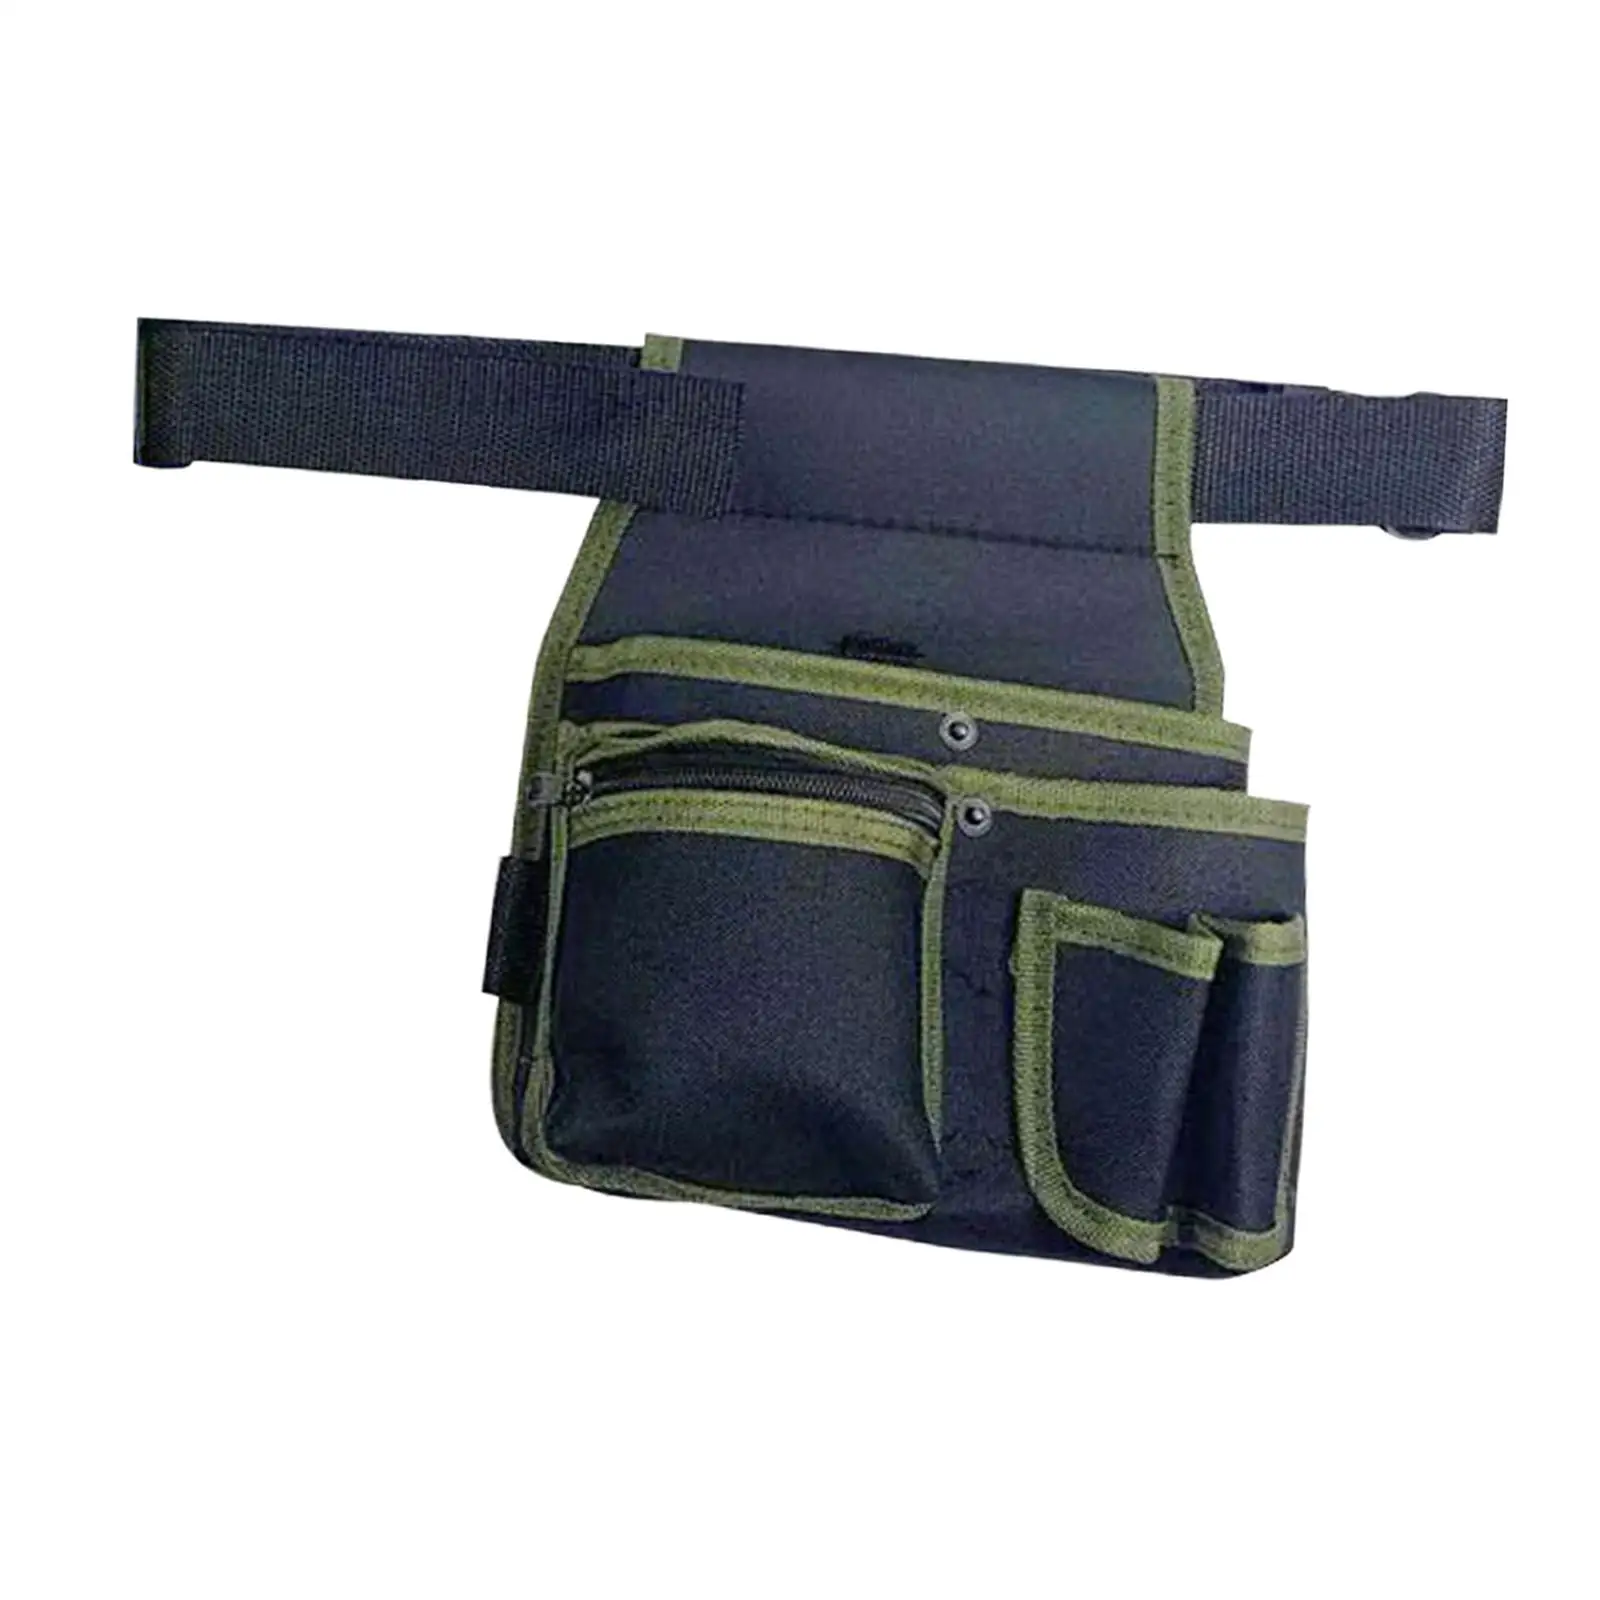 Waist Belt Pouch Bag Waterproof Durable Carpenter Tool Belt Construction